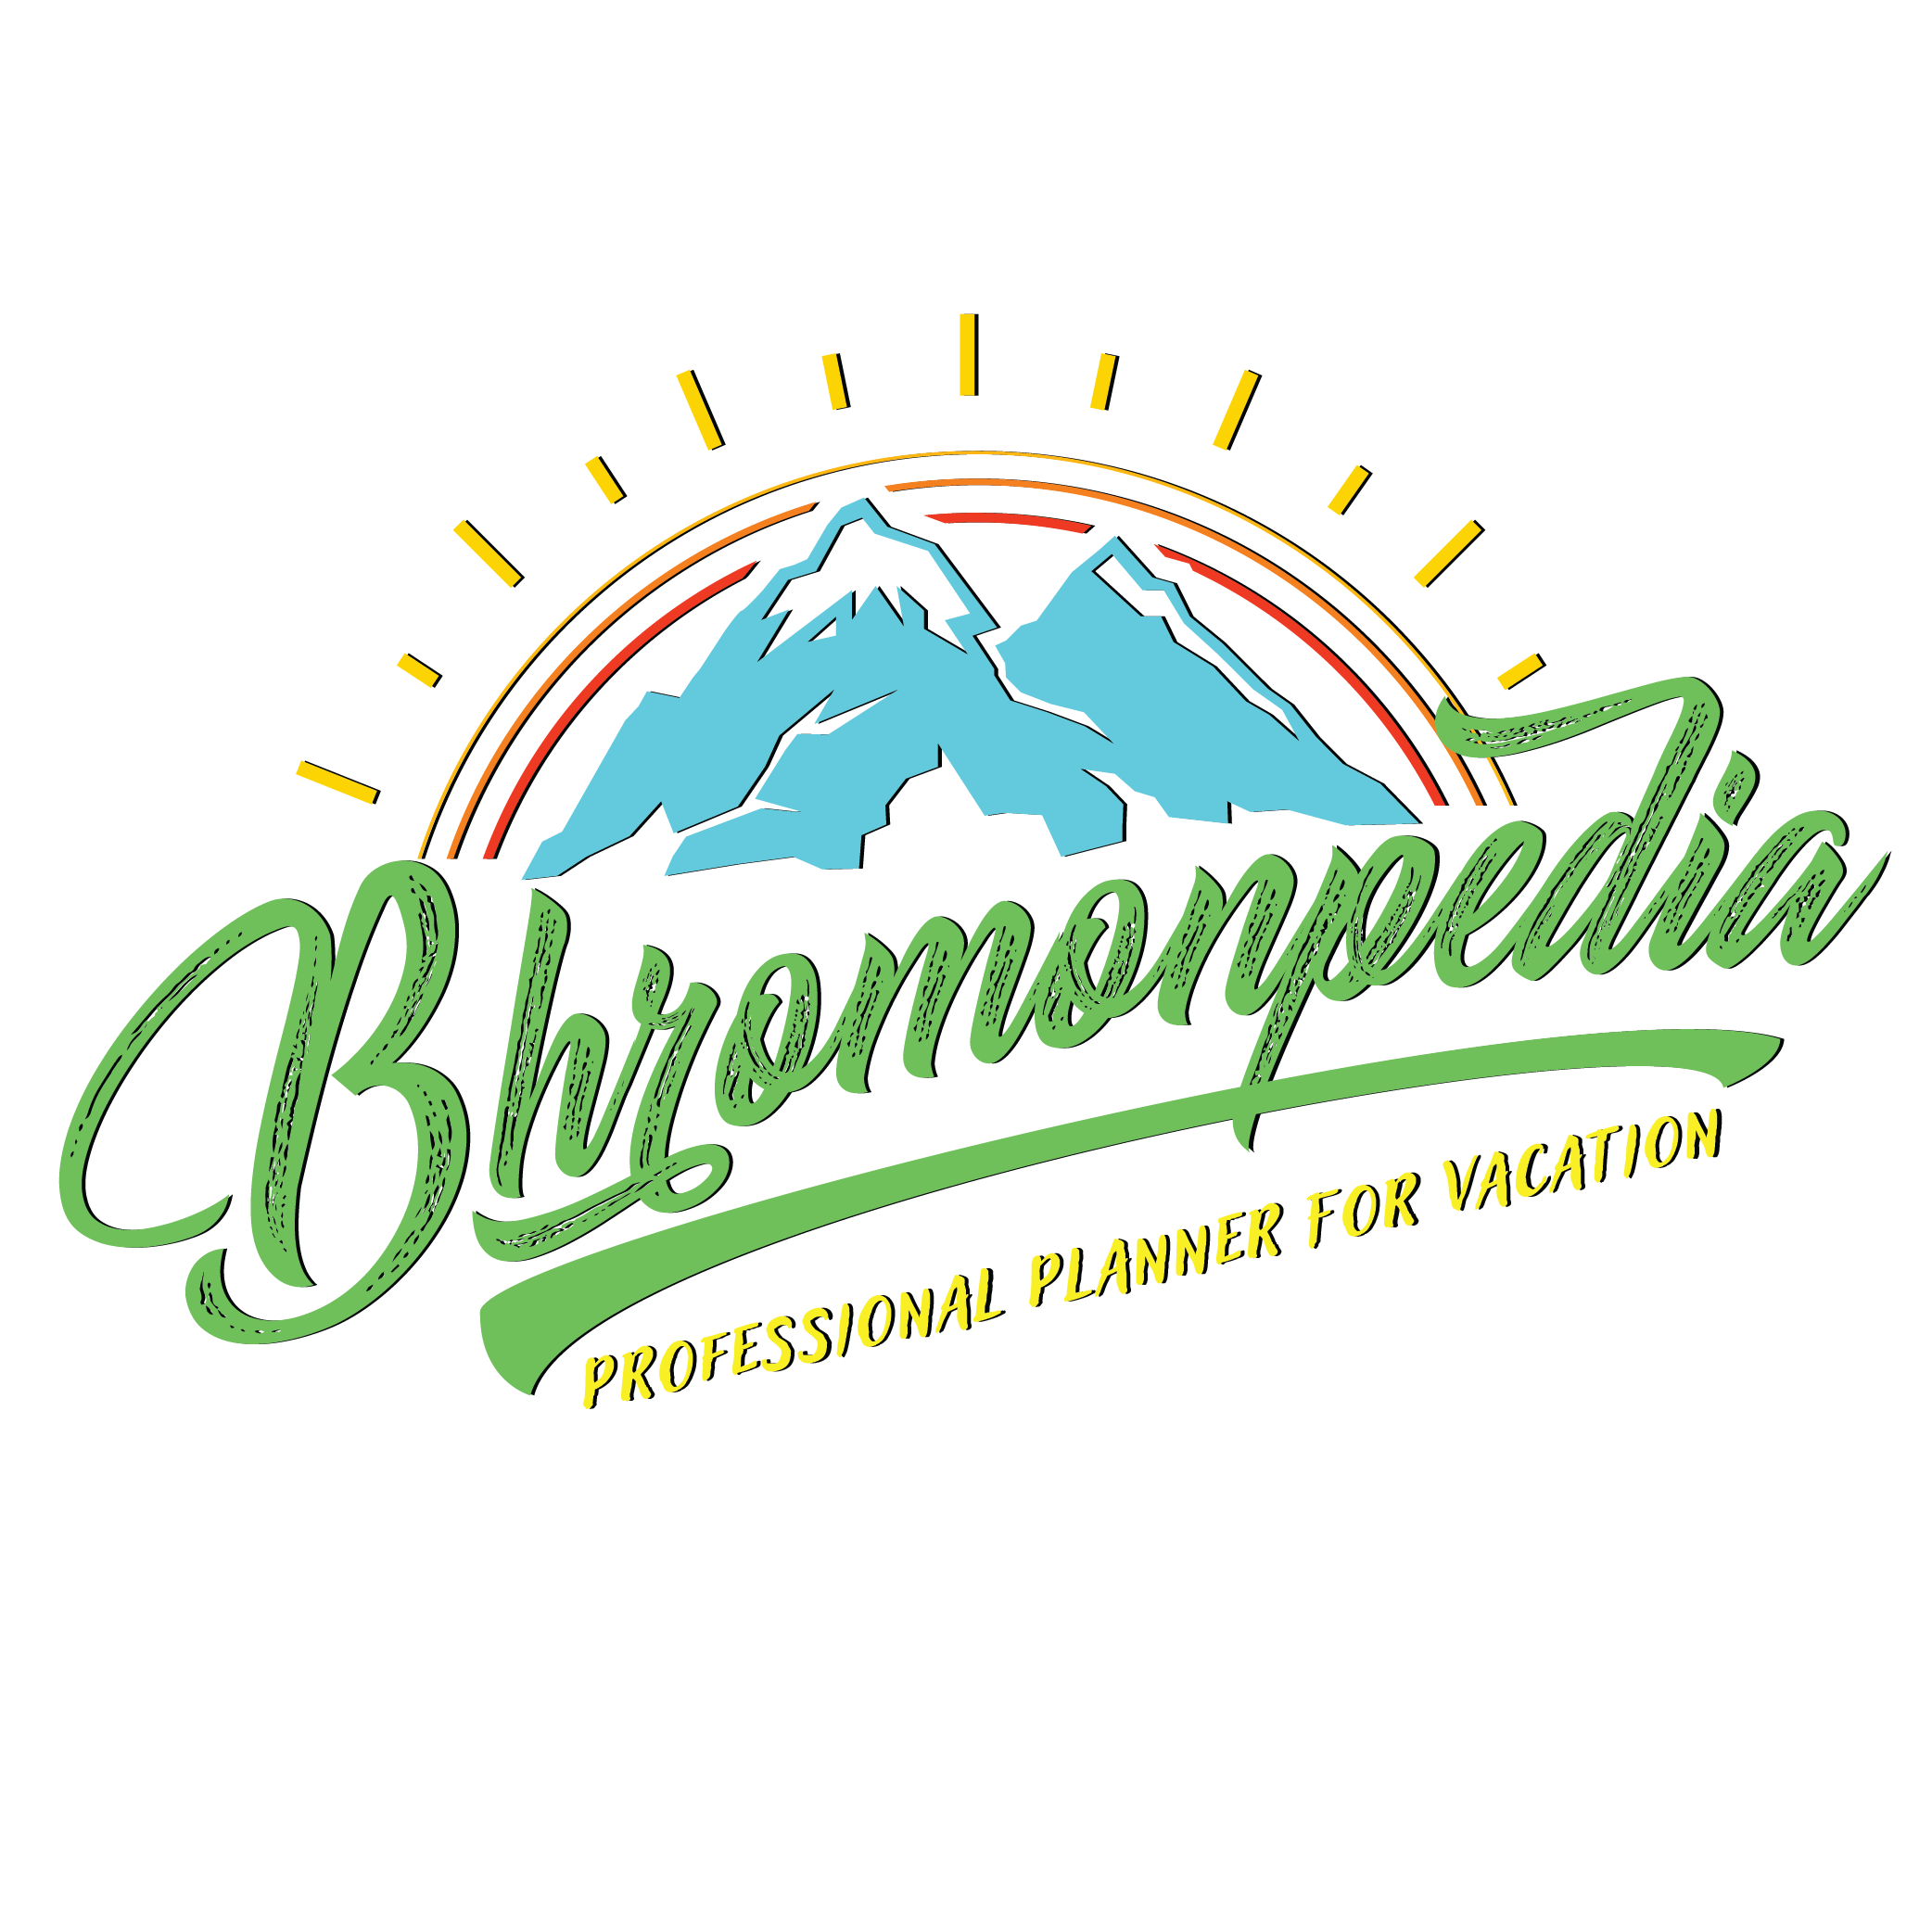 Bhromonpedia Travel Management